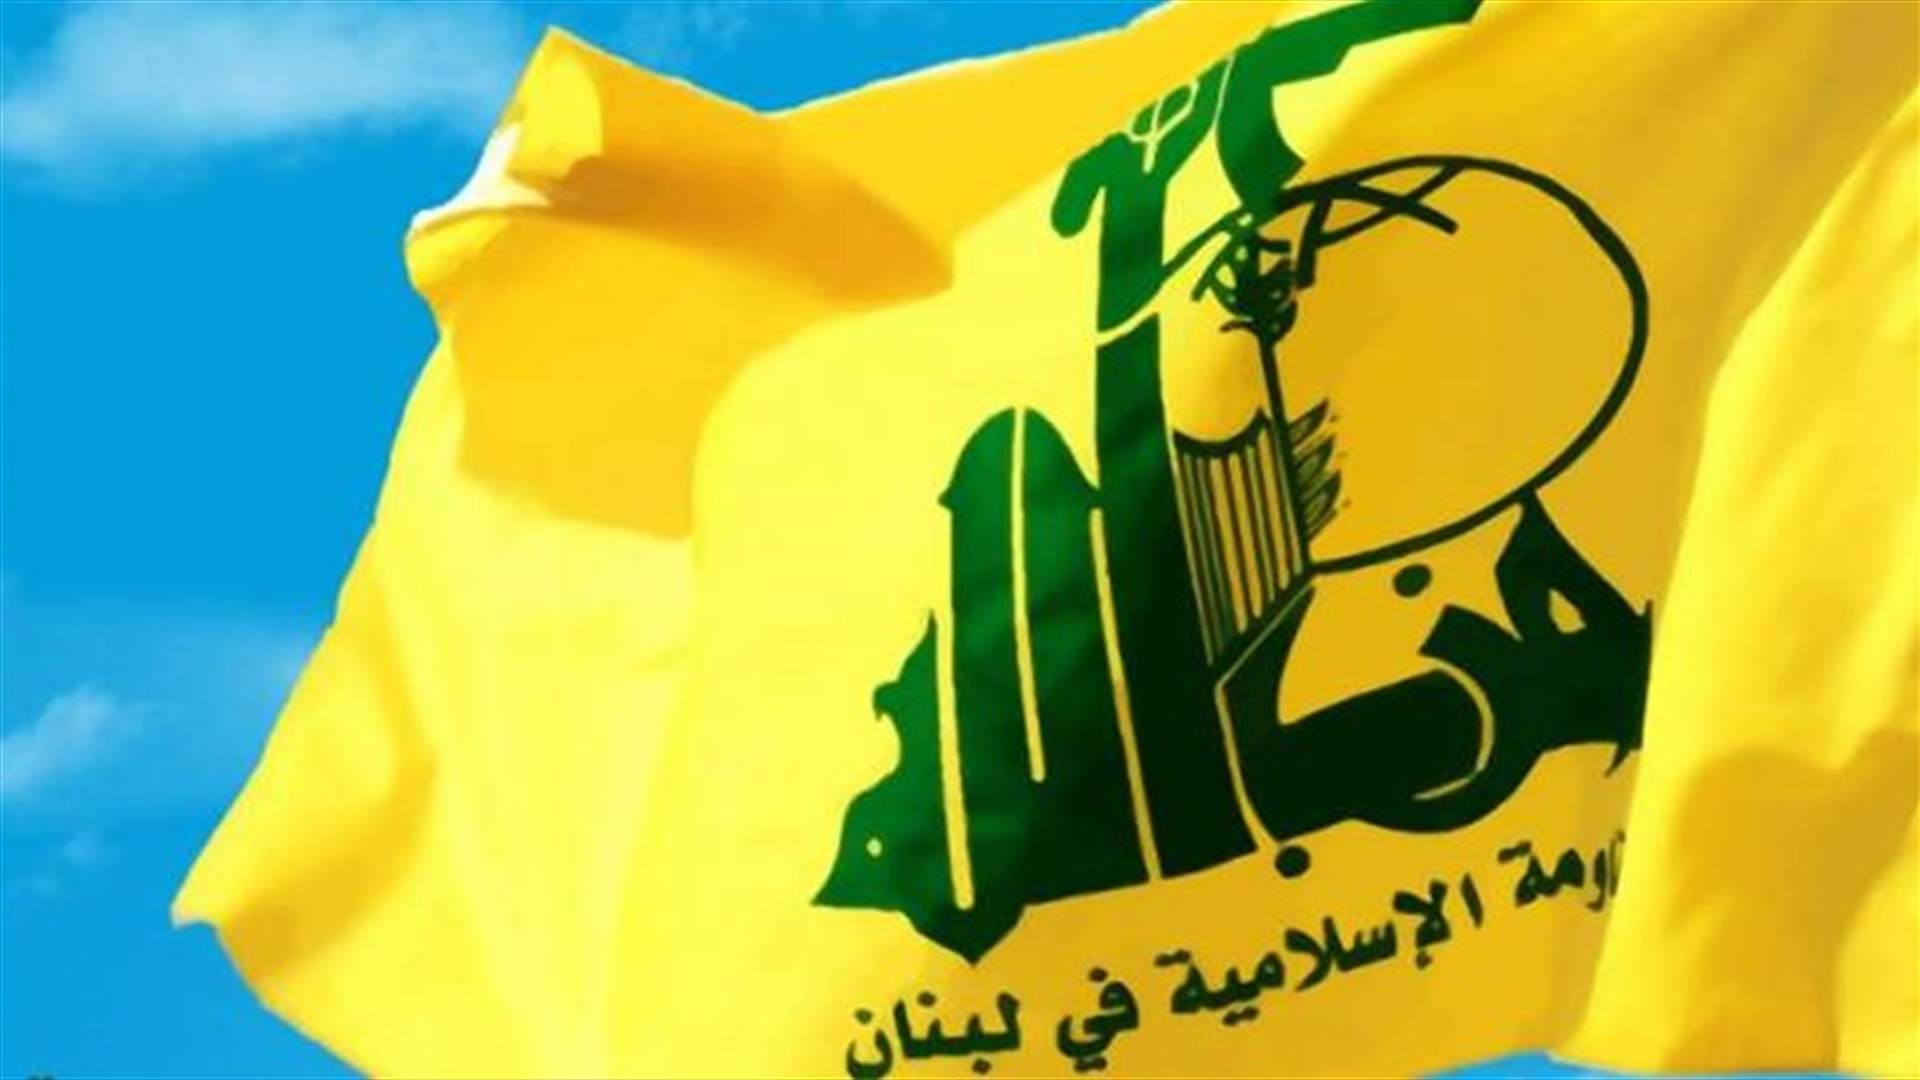 بعد التغريدات التي أثارت جدلا حول فيلم نادين لبكي... حزب الله: ما صدر لا يعبّر عن رأينا